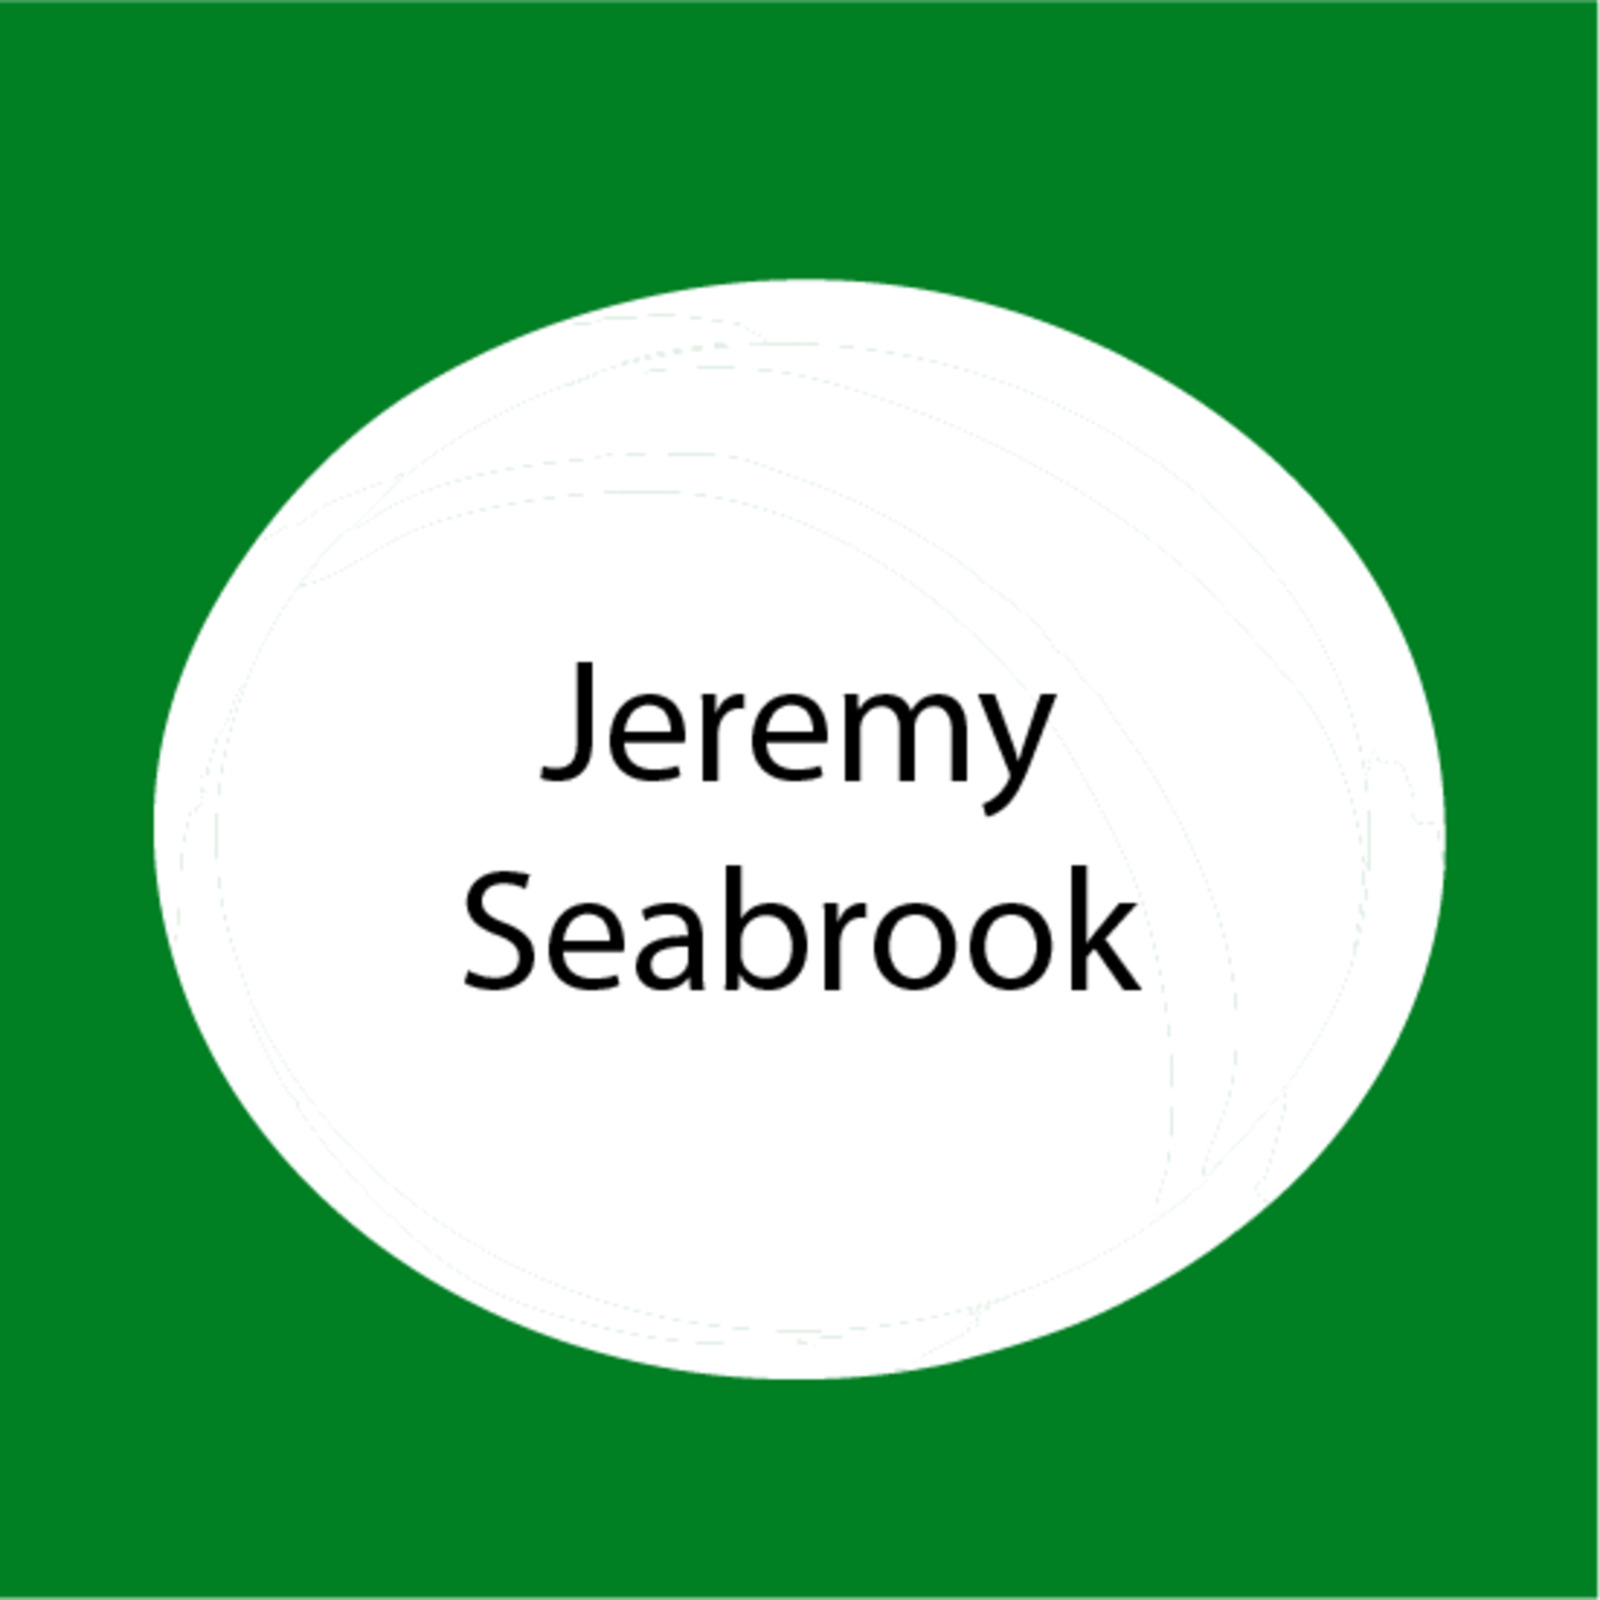 Jeremy Seabrook